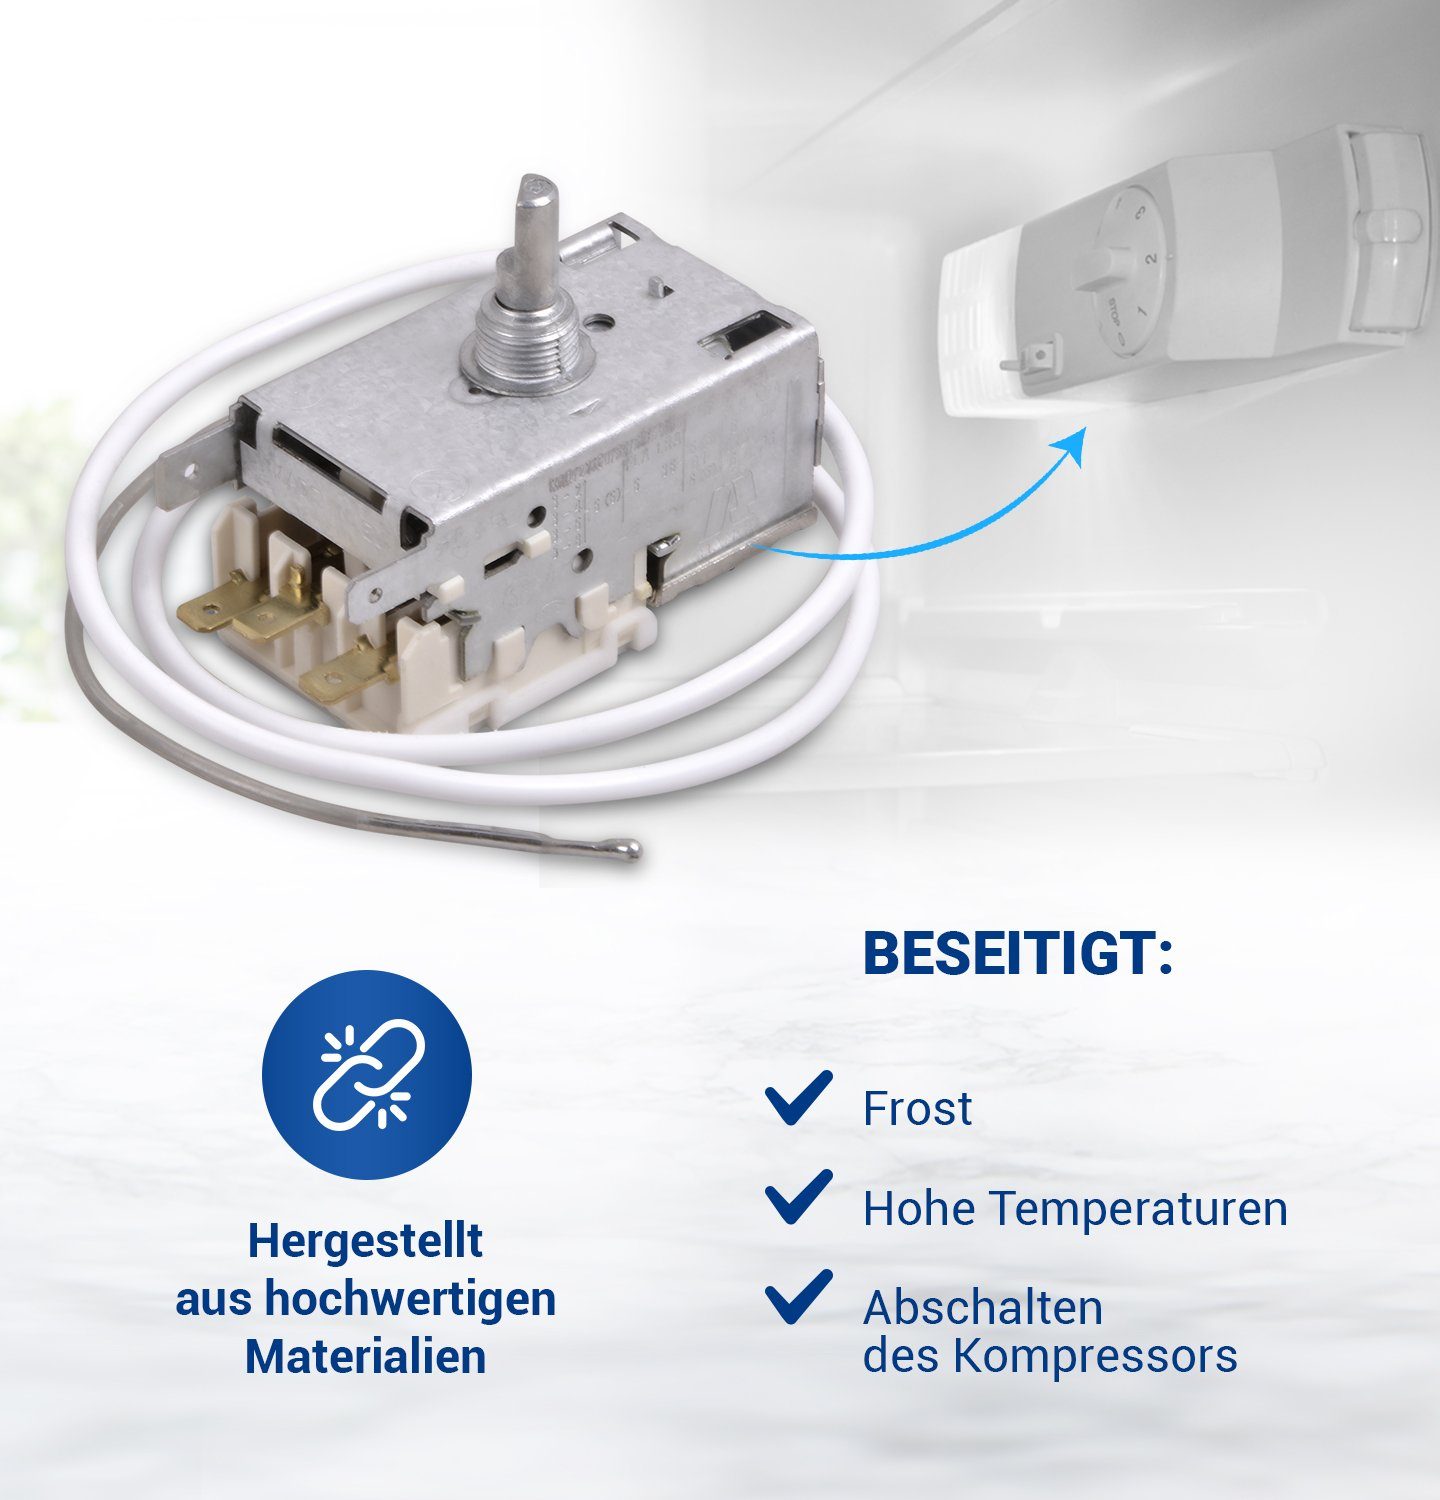 3 Ersatz Thermodetektor Liebherr 6151097 AMP 4,8 VIOKS Kühlschrank, x für mm für Kühlthermostat